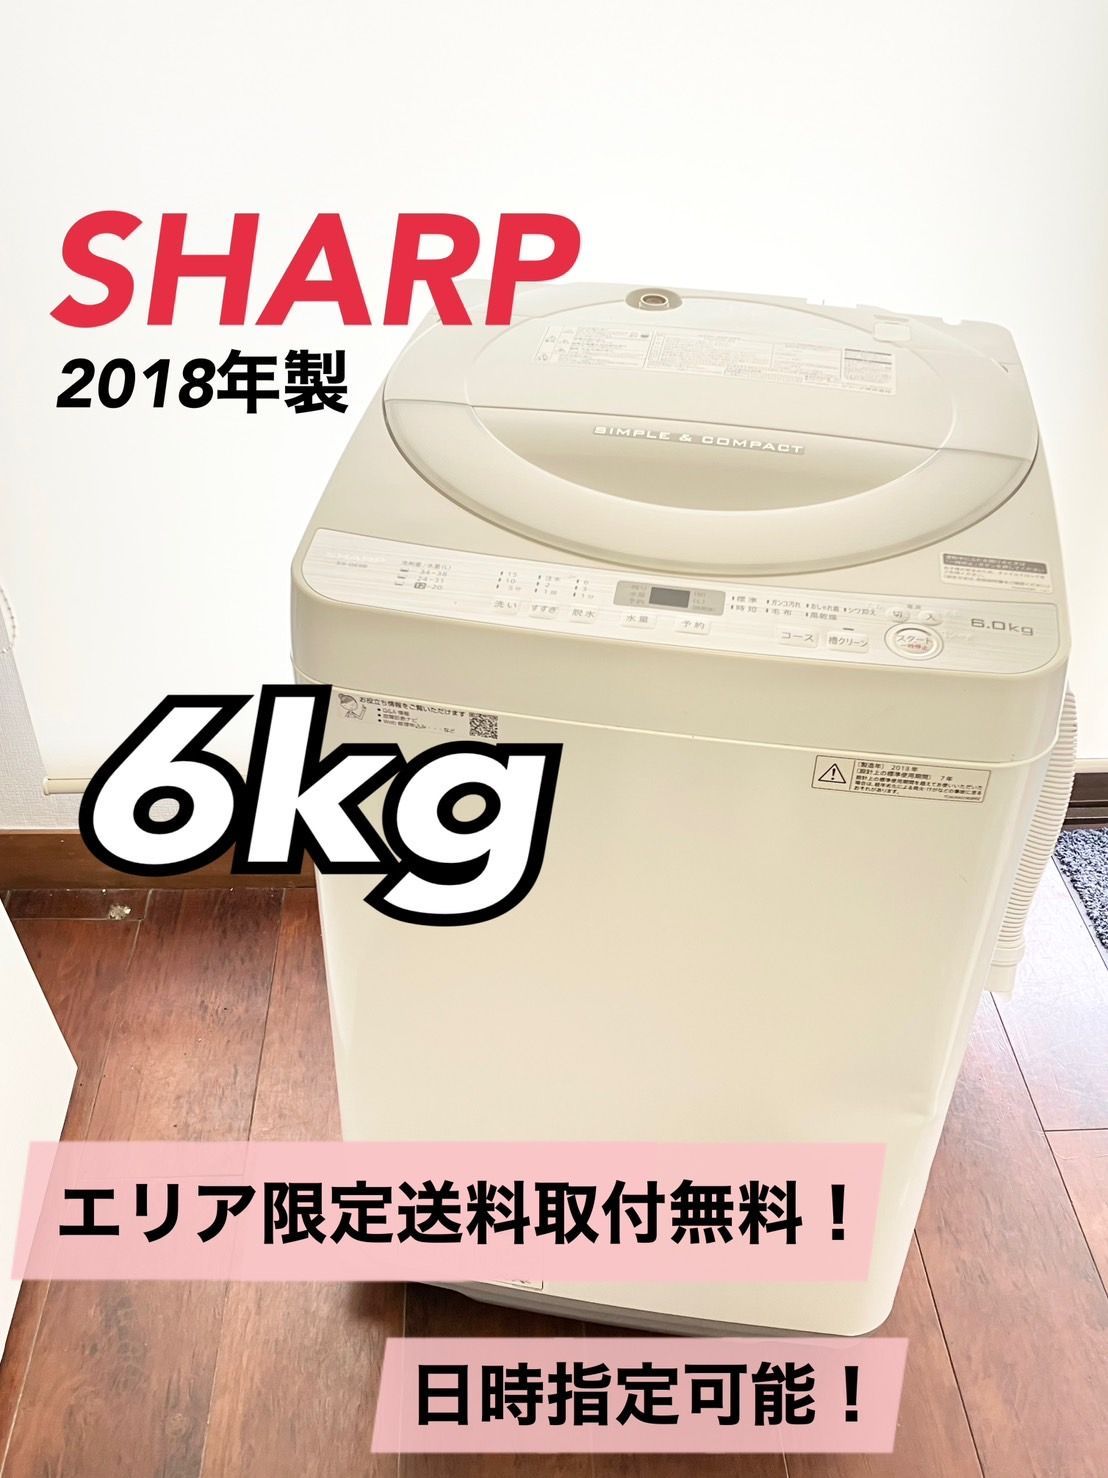 SHARP シャープ 全自動洗濯機 6kg ES-GE6B-W 2018年製 白 一人暮らし 